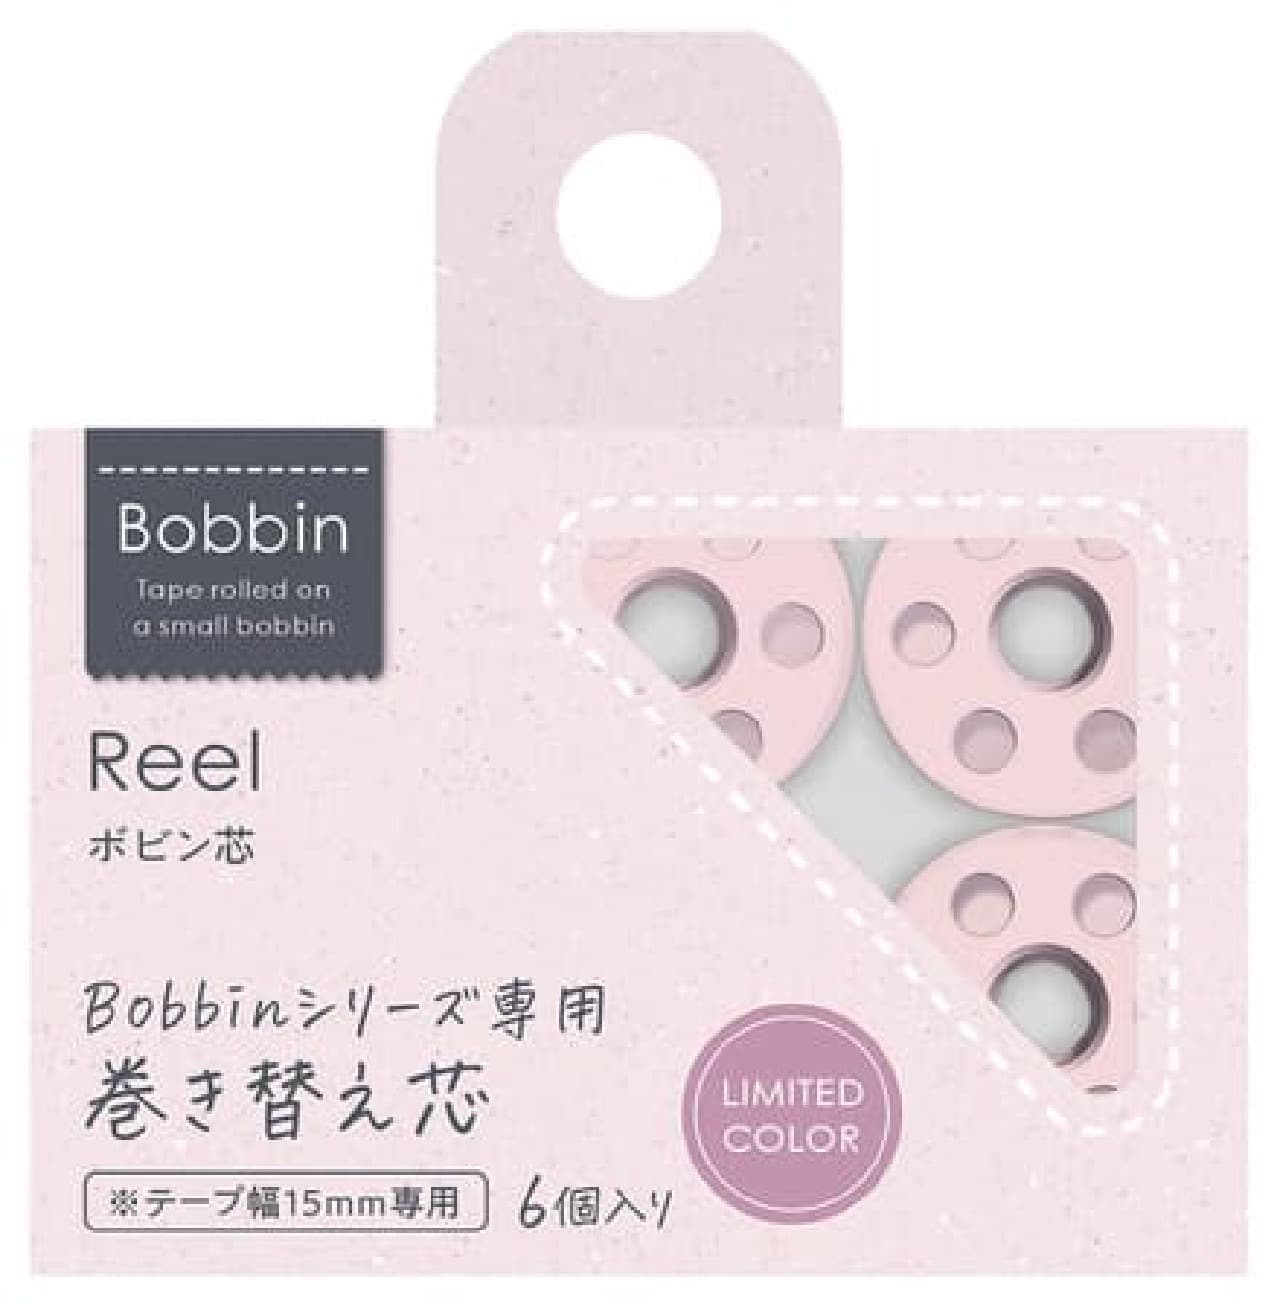 マステシリーズ「Bobbin」限定カラー発売 -- くすみピンクが可愛いツールセット＆ボビン芯